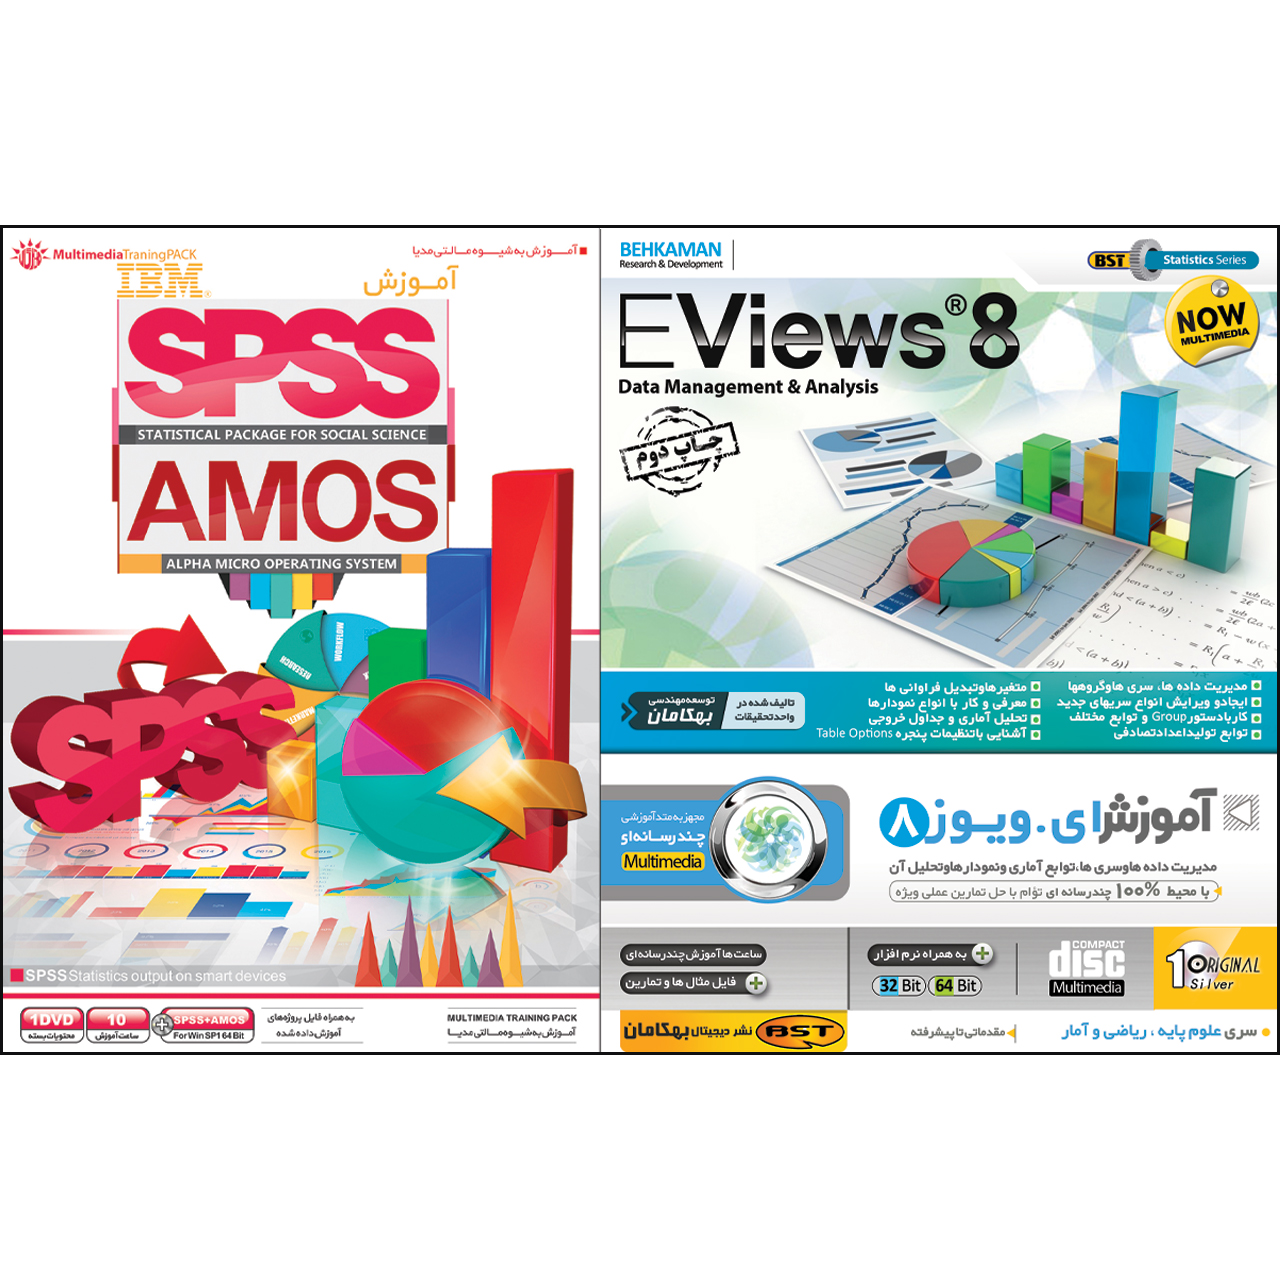  نرم افزار آموزش Eviews  نشر بهکامان بهمراه نرم افزار آموزش   SPSS & Amos نشر مهرگان